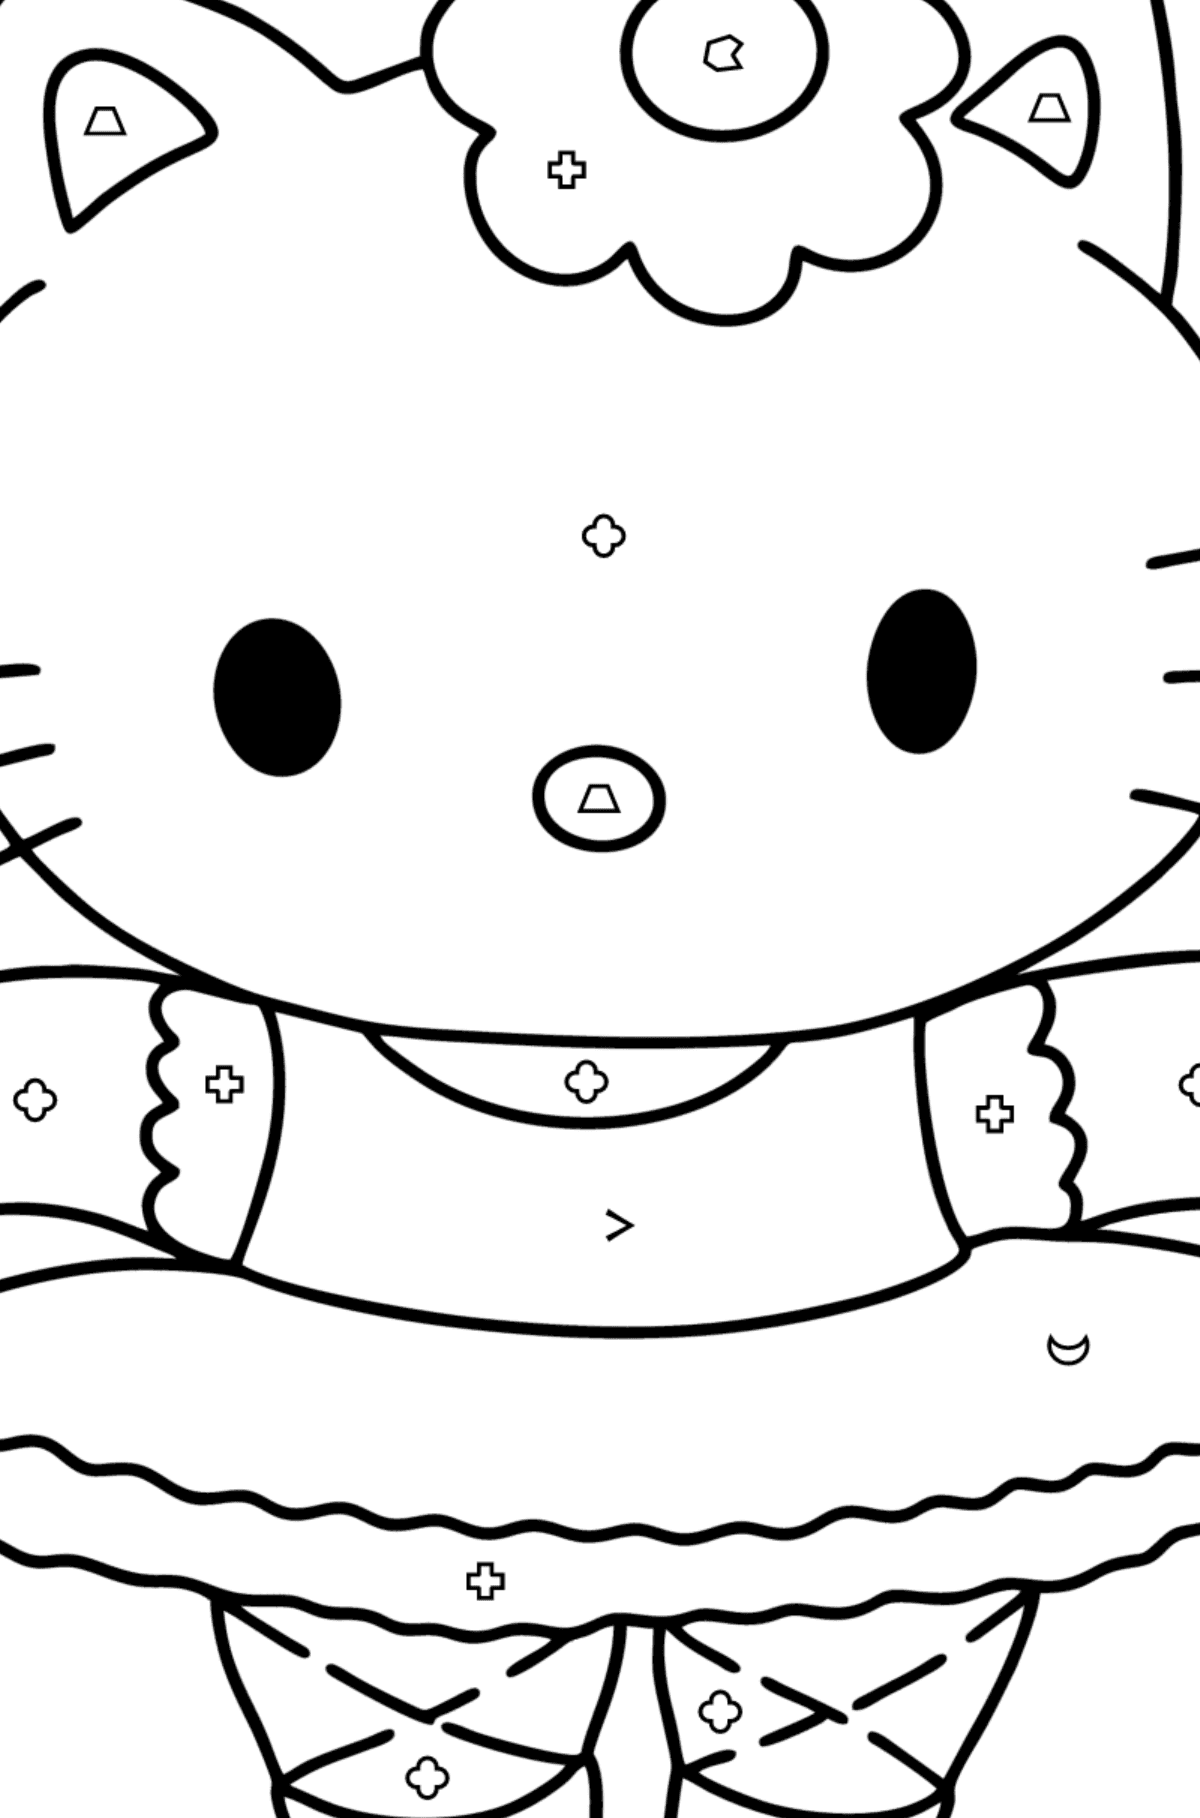 Boyama sayfası Hello Kitty balerin - Sembollere ve Geometrik Şekillerle Boyama çocuklar için